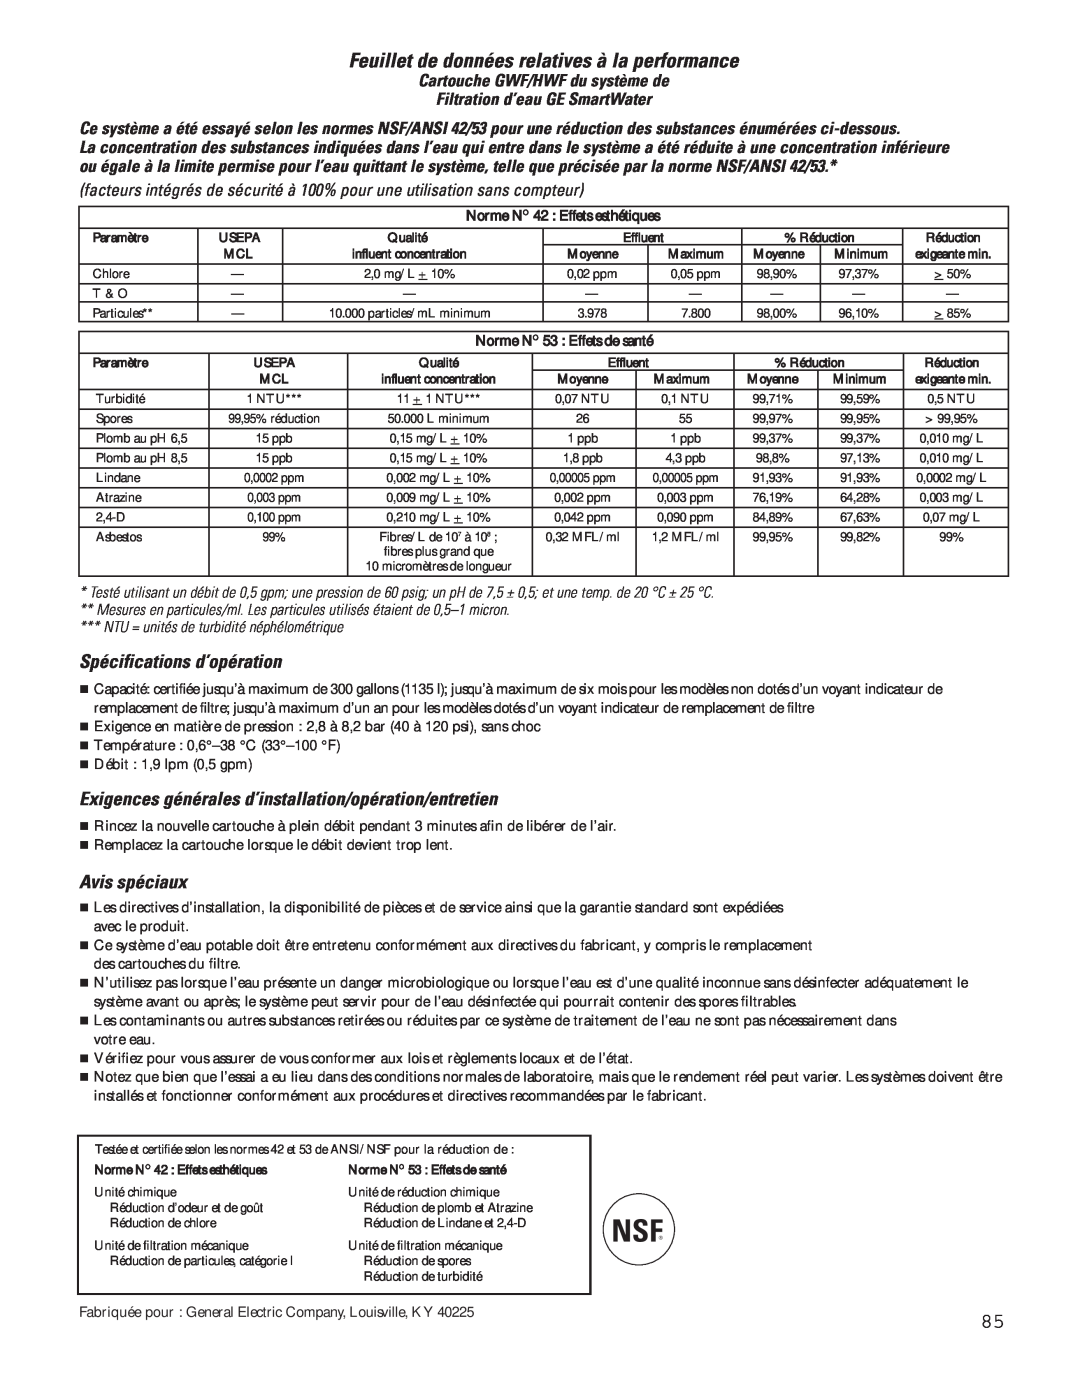 GE 200D8074P043, 49-60637 manual Feuillet de données relatives à la performance, Spécifications d’opération, Avis spéciaux 